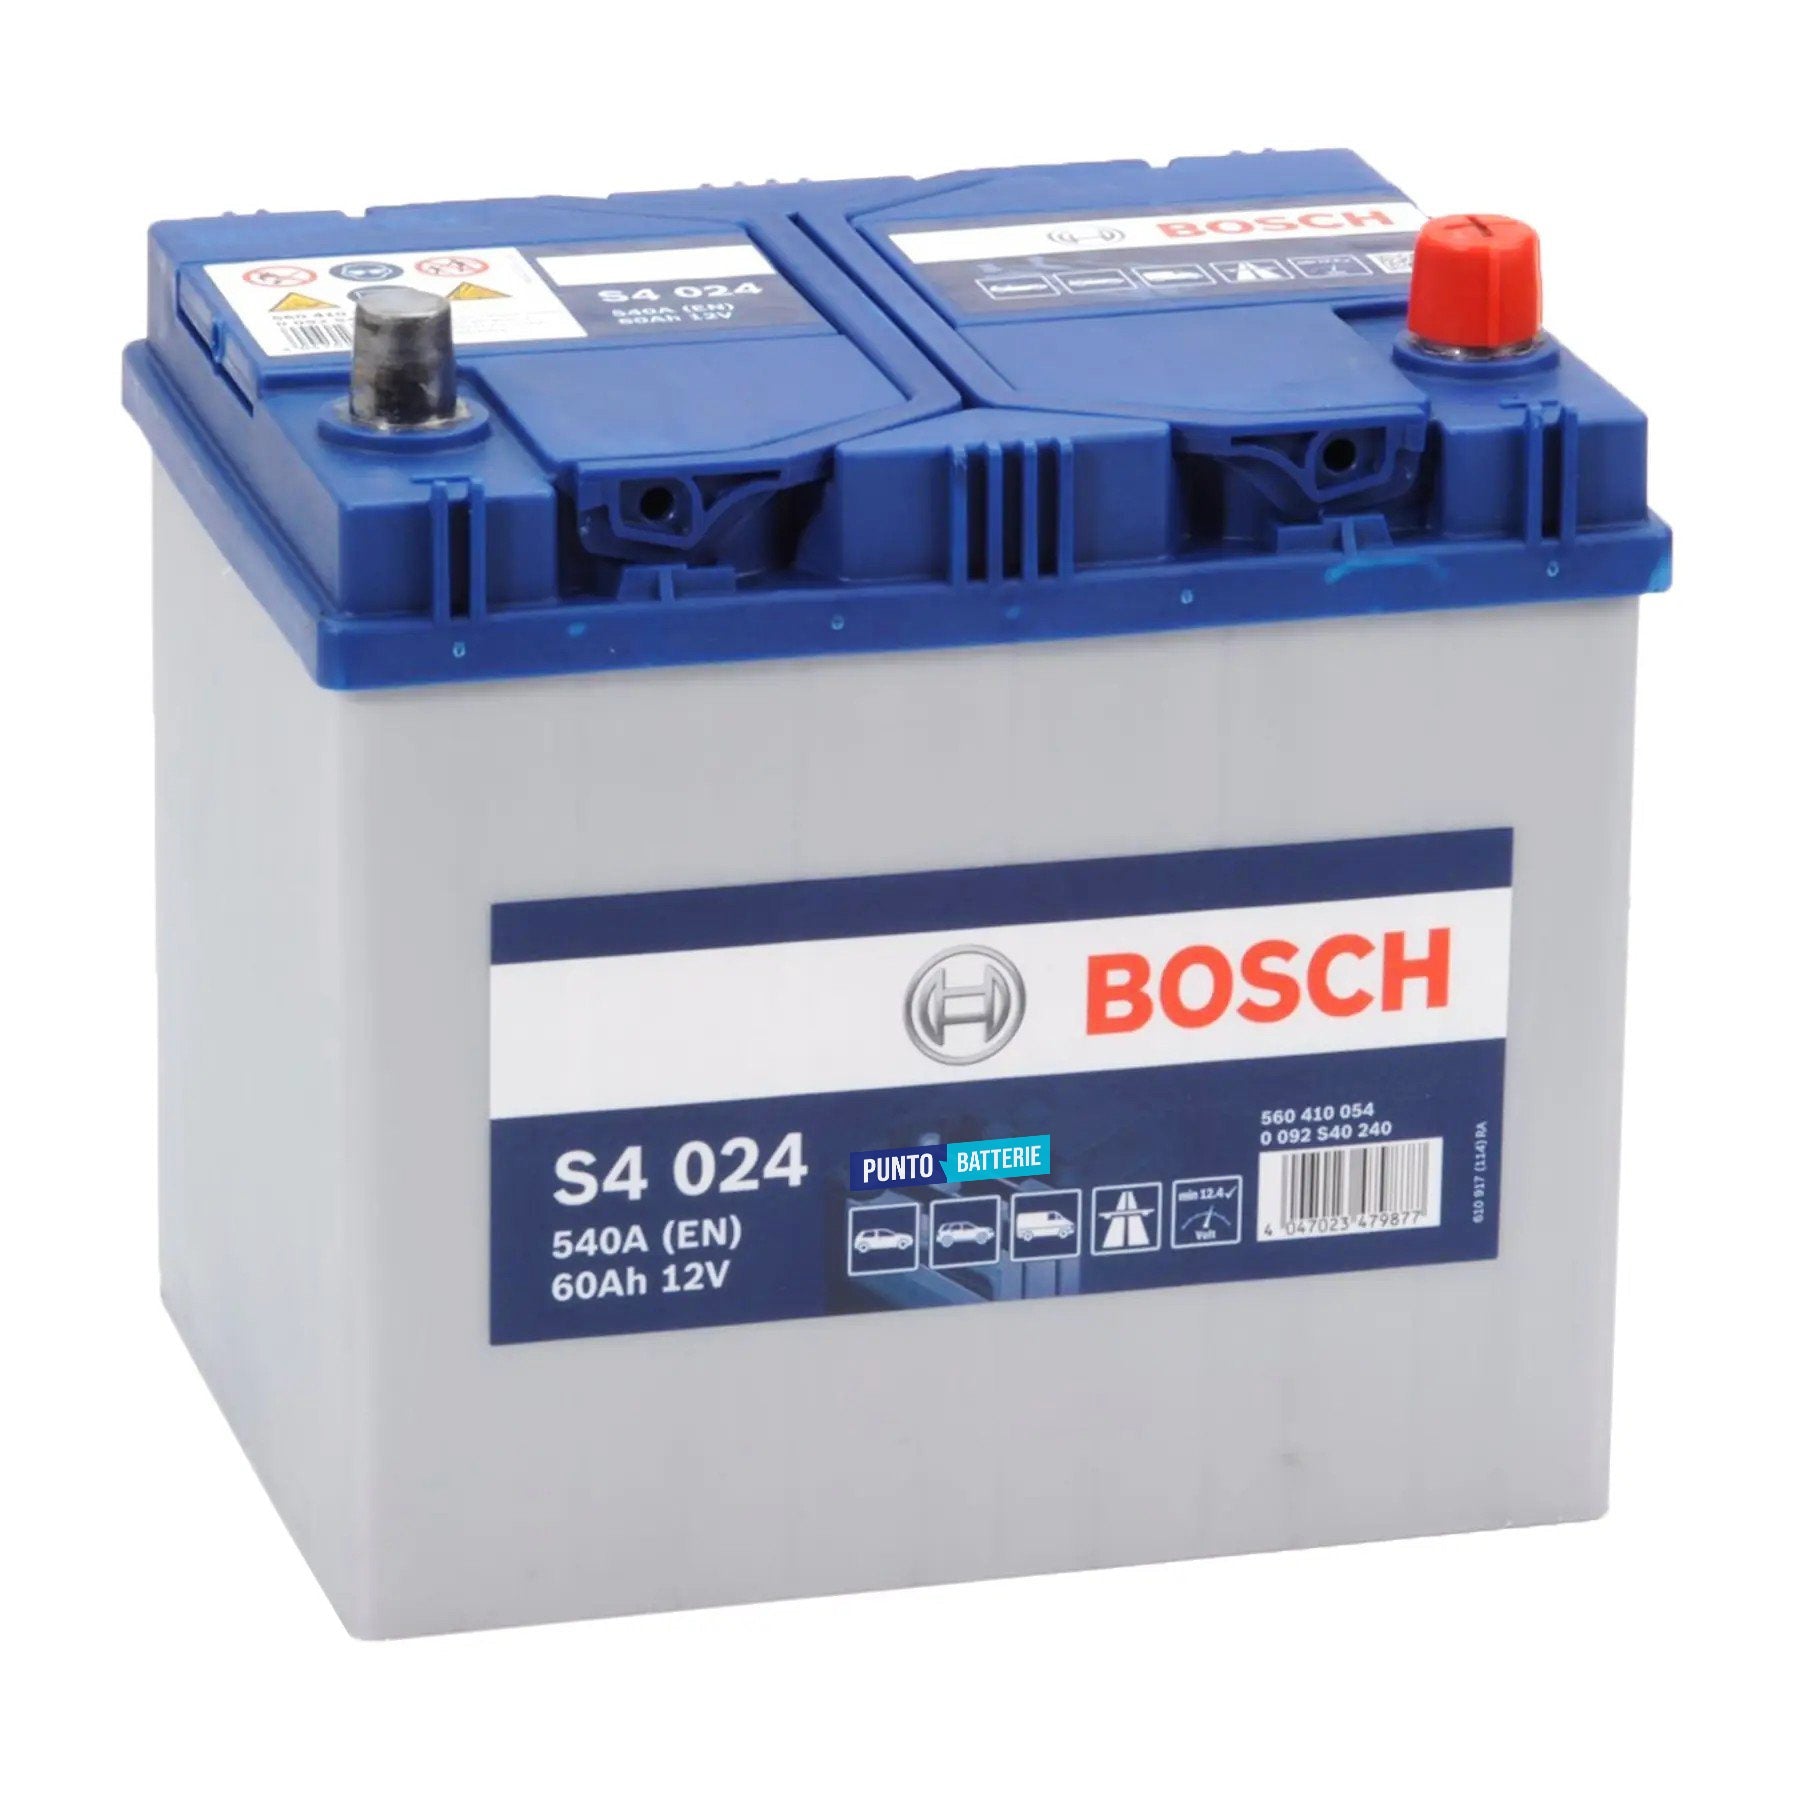 Batteria originale Bosch S4 S4 024, dimensioni 232 x 173 x 225, polo positivo a destra, 12 volt, 60 amperora, 540 ampere. Batteria per auto e veicoli leggeri.